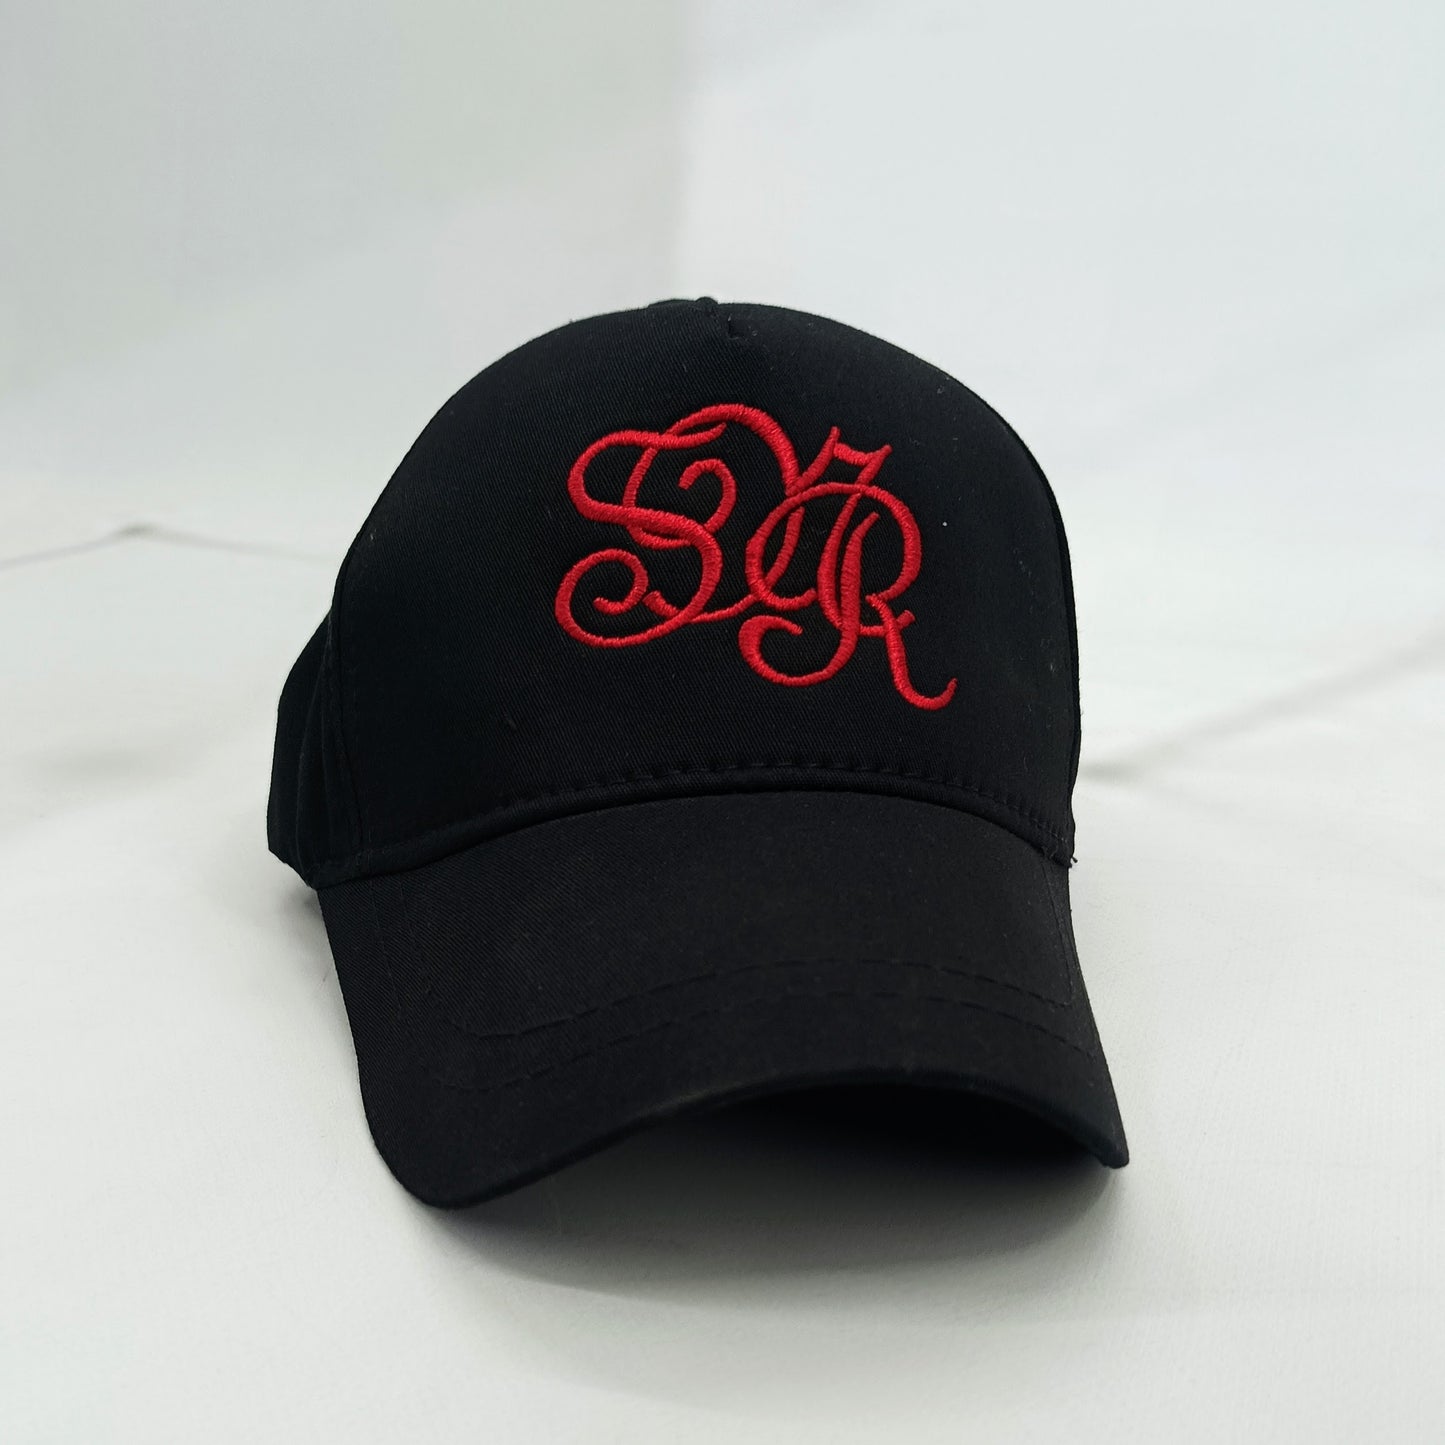 Καπέλο Jockey Μαύρο με Κυρτή Μετωπιαία Ραφή και Κόκκινο Κεντημένο Σχέδιο - Αθλητικό Στυλ | S01NR